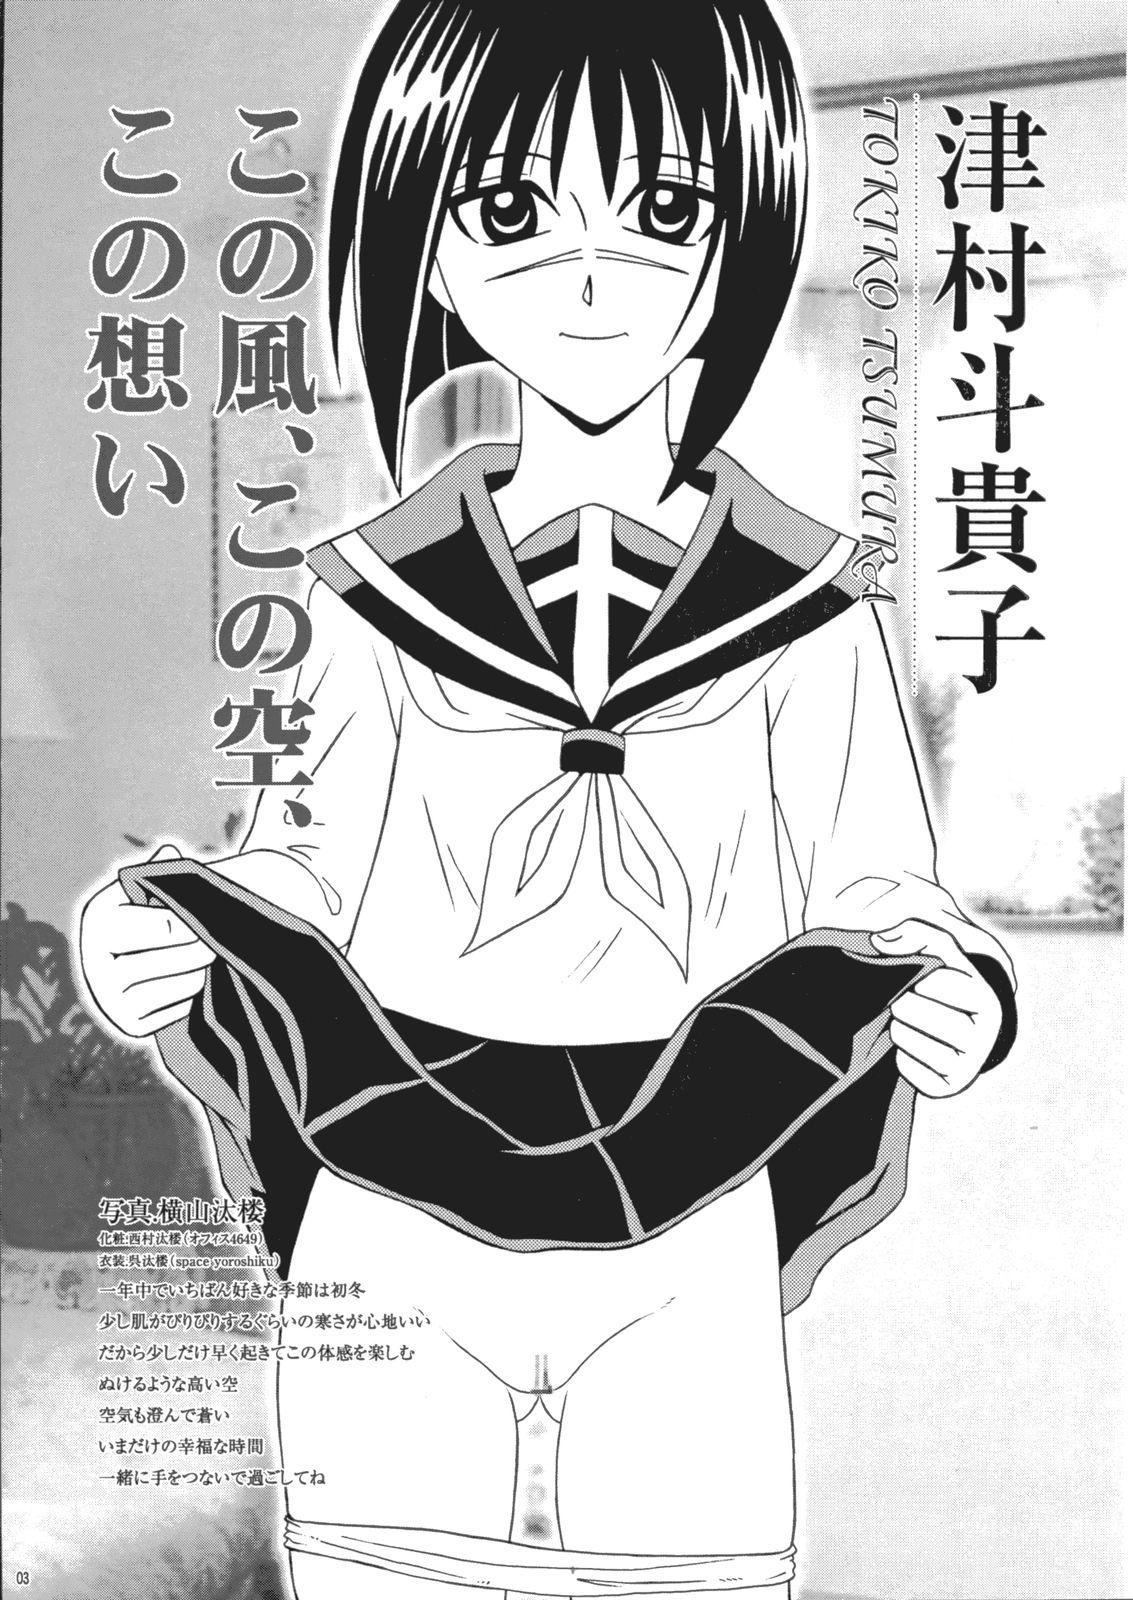 Jav Saku-chan Kurabu Vol.03 - Naruto One piece Ichigo 100 Is Hikaru no go Alt - Page 2